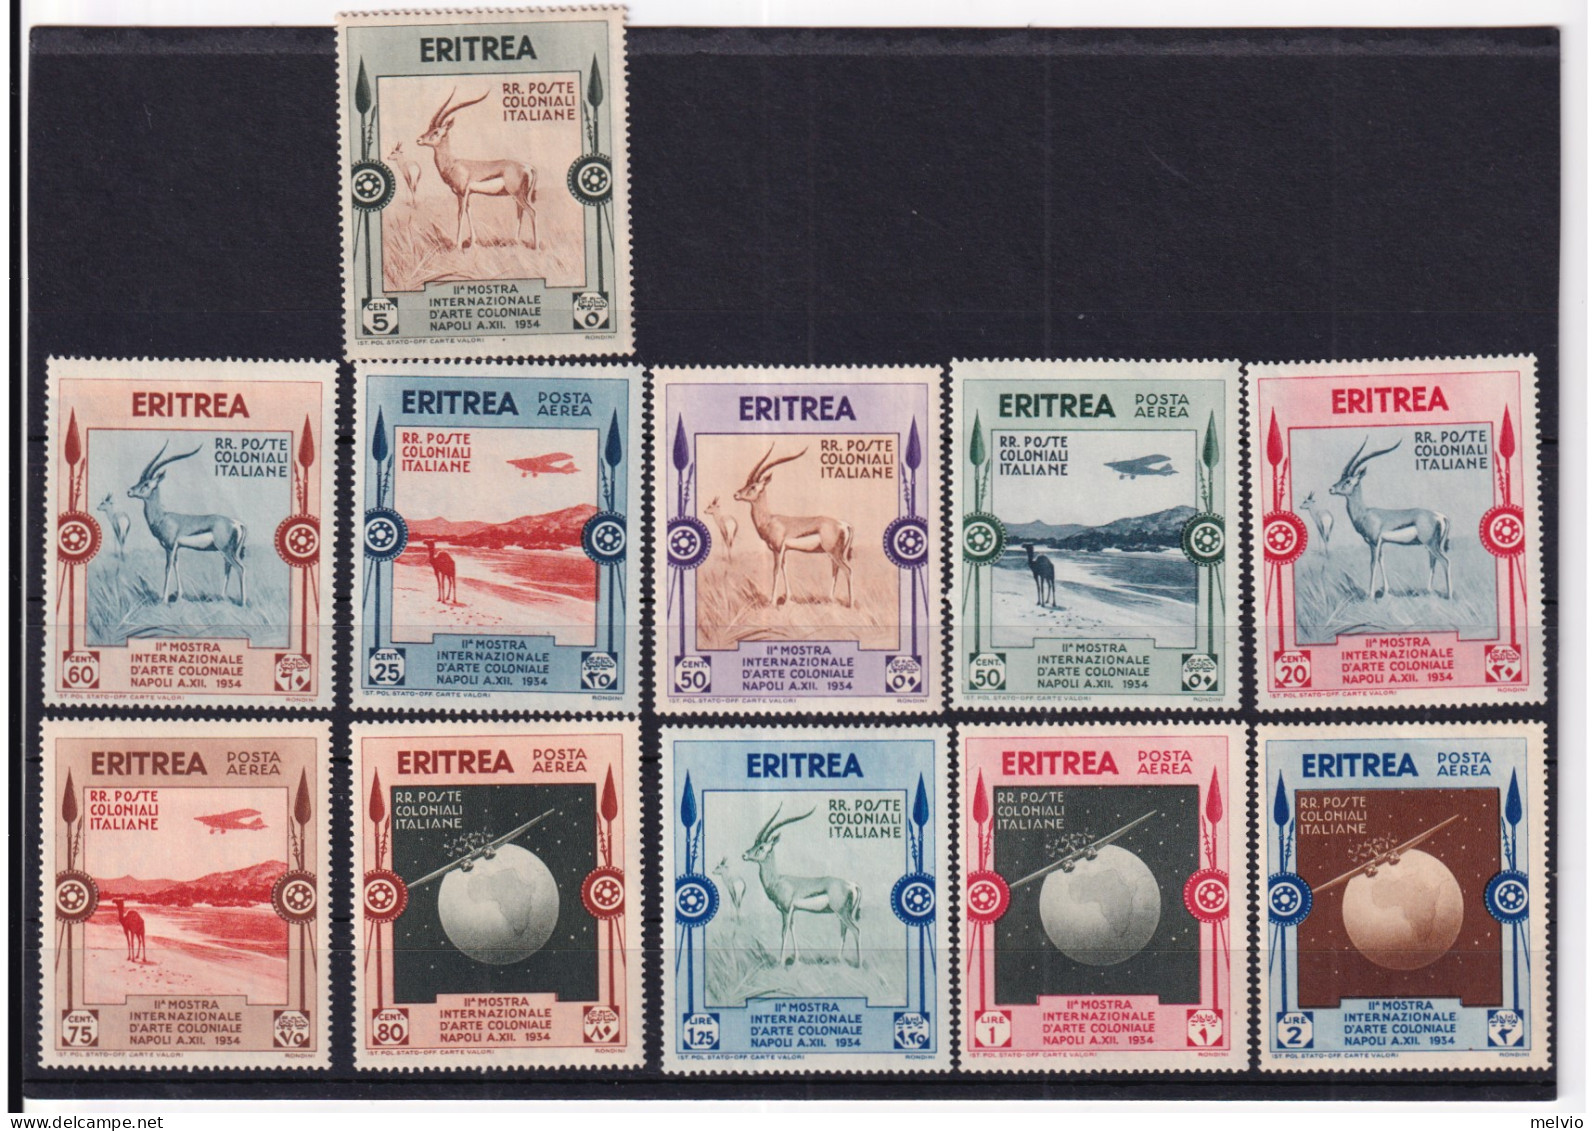 1934 ERITREA 2^ Mostra D'Arte Coloniale Serie Completa PO + PA Nuova Traccia Lin - Eritrea